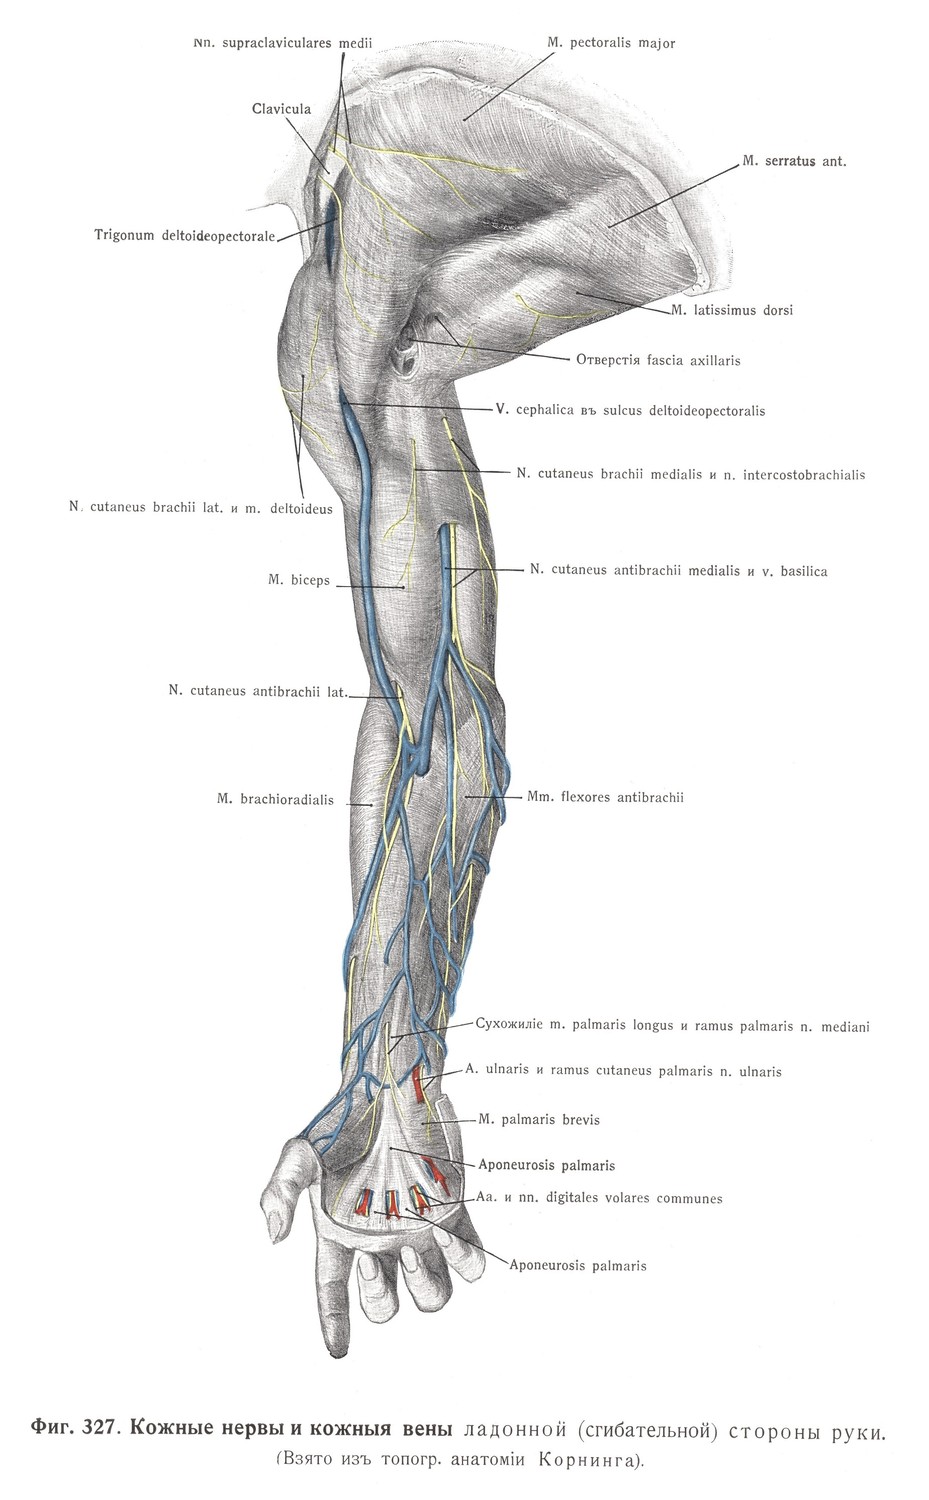 Кожные нервы и кожные вены ладонной (сгибательной) стороны руки